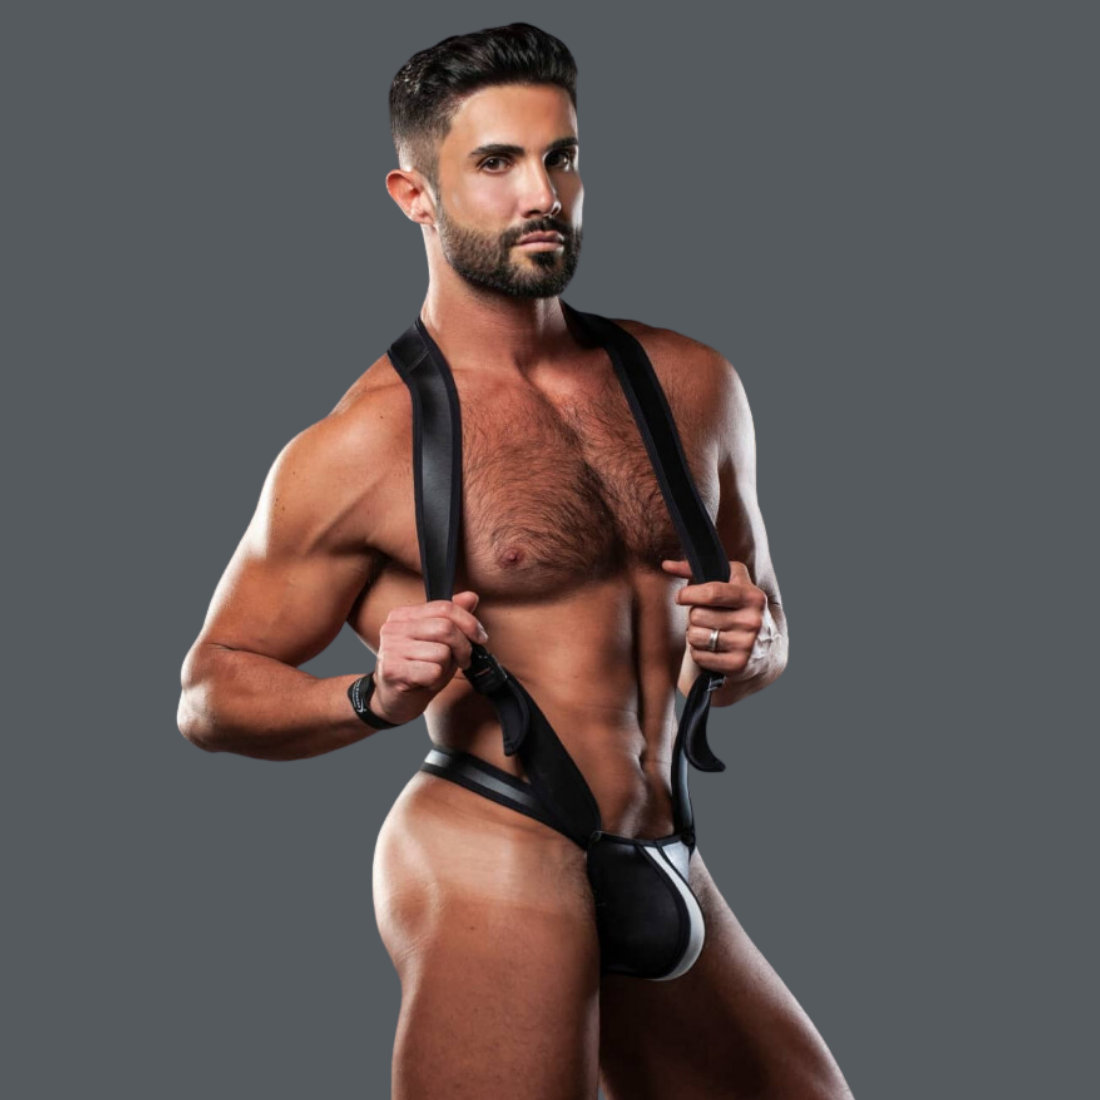 Stoere zwarte heren singlet, ontworpen door het Italiaanse modehuis Sparta’s Harness perfect voor gay mannen en te koop bij Flavourez.